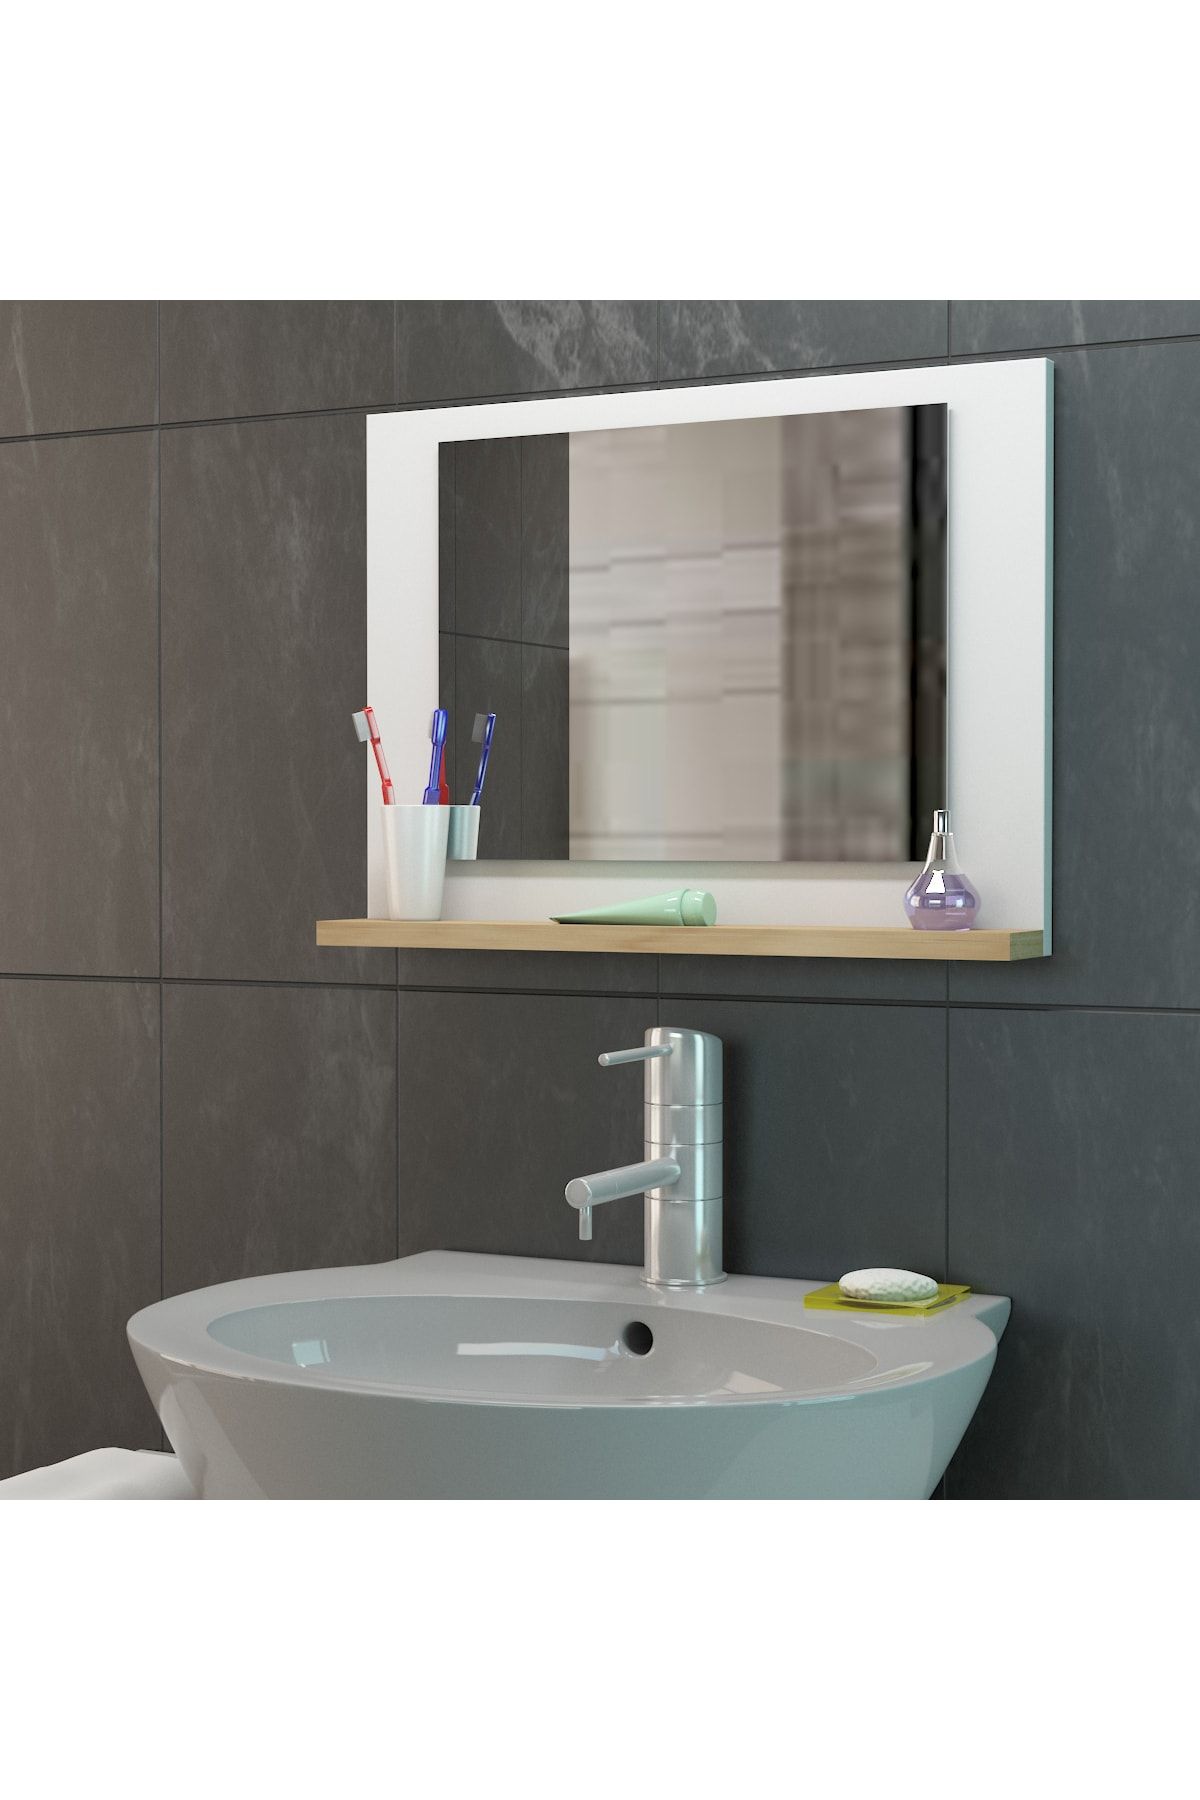 FLORADESİGN Banyo Aynası / Lavabo Aynası / Aynalı Banyo Dolabı / Makyaj Ayna /flora Lara 45*60 Cm (BEYAZ MEŞE)